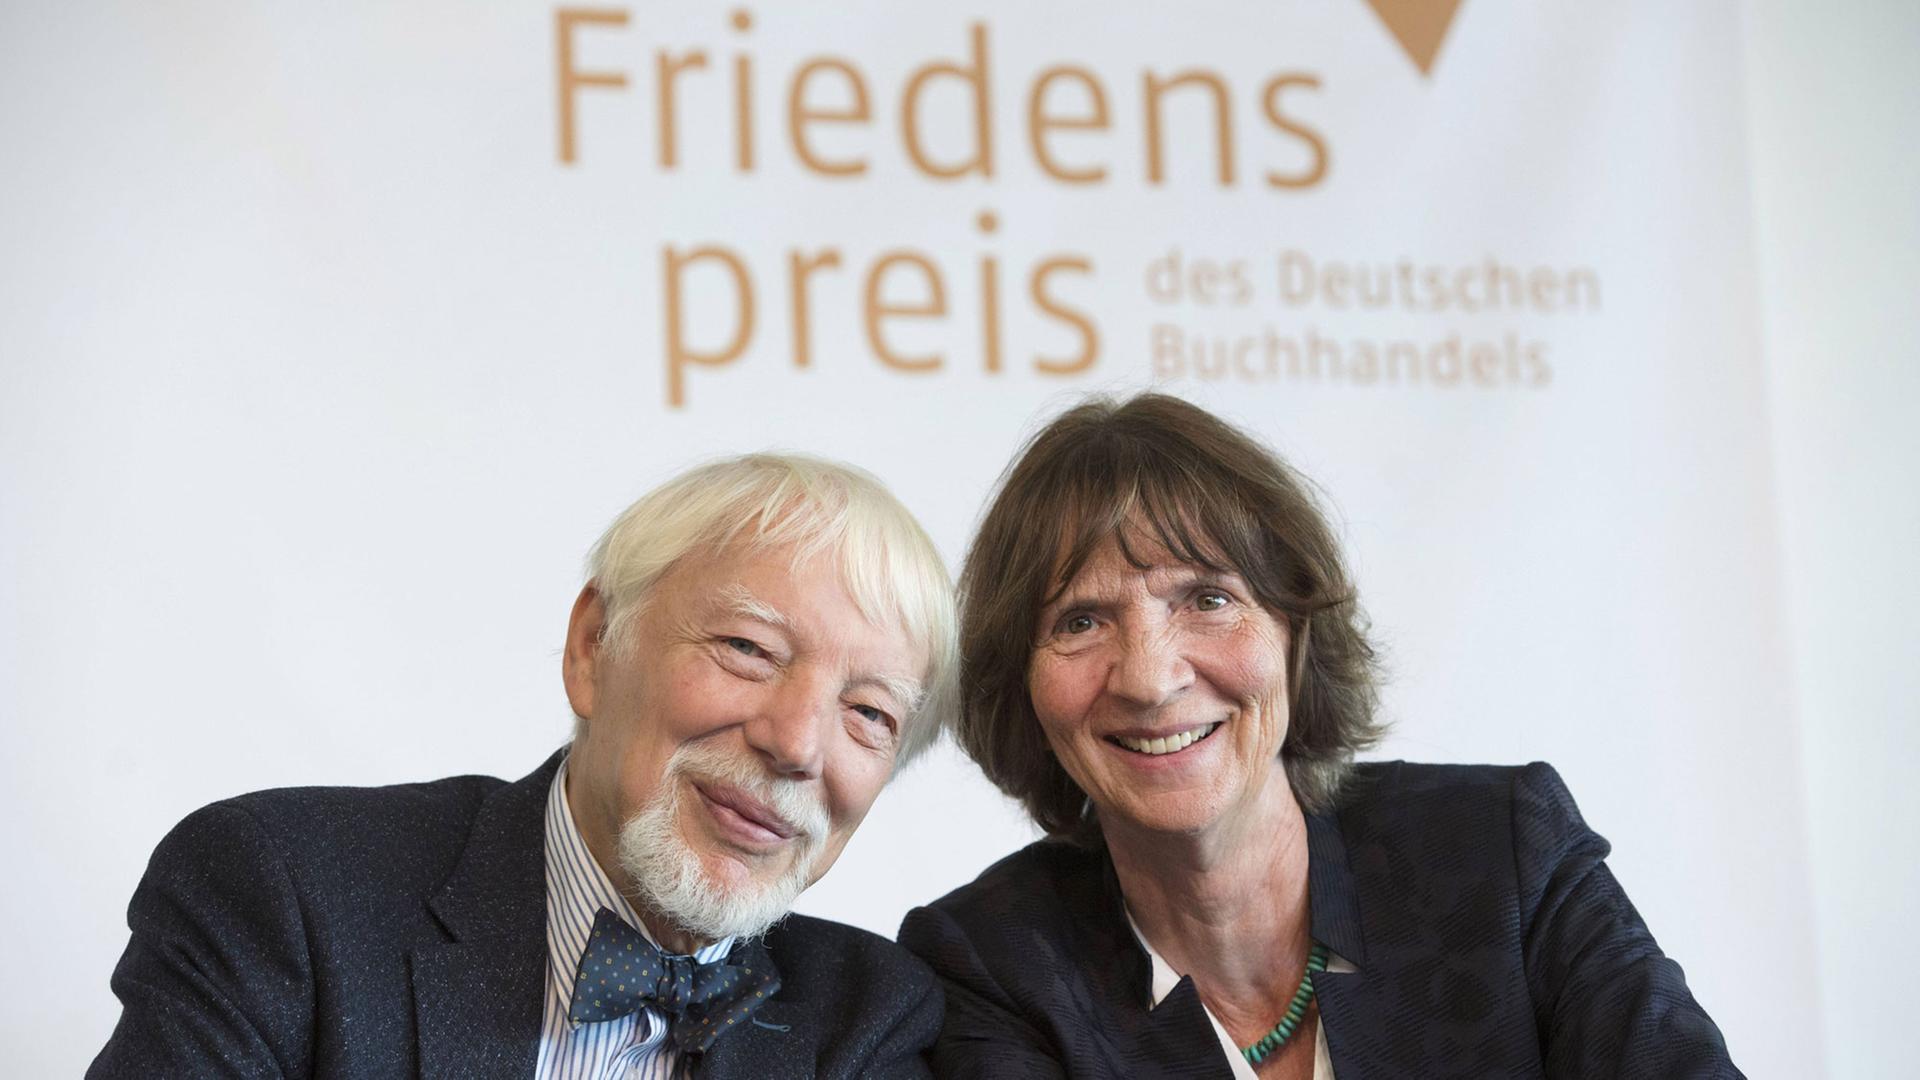 Jan und Aleida Assmann, die Friedenpreisträger des Deutschen Buchhandels auf der Frankfurter Buchmesse